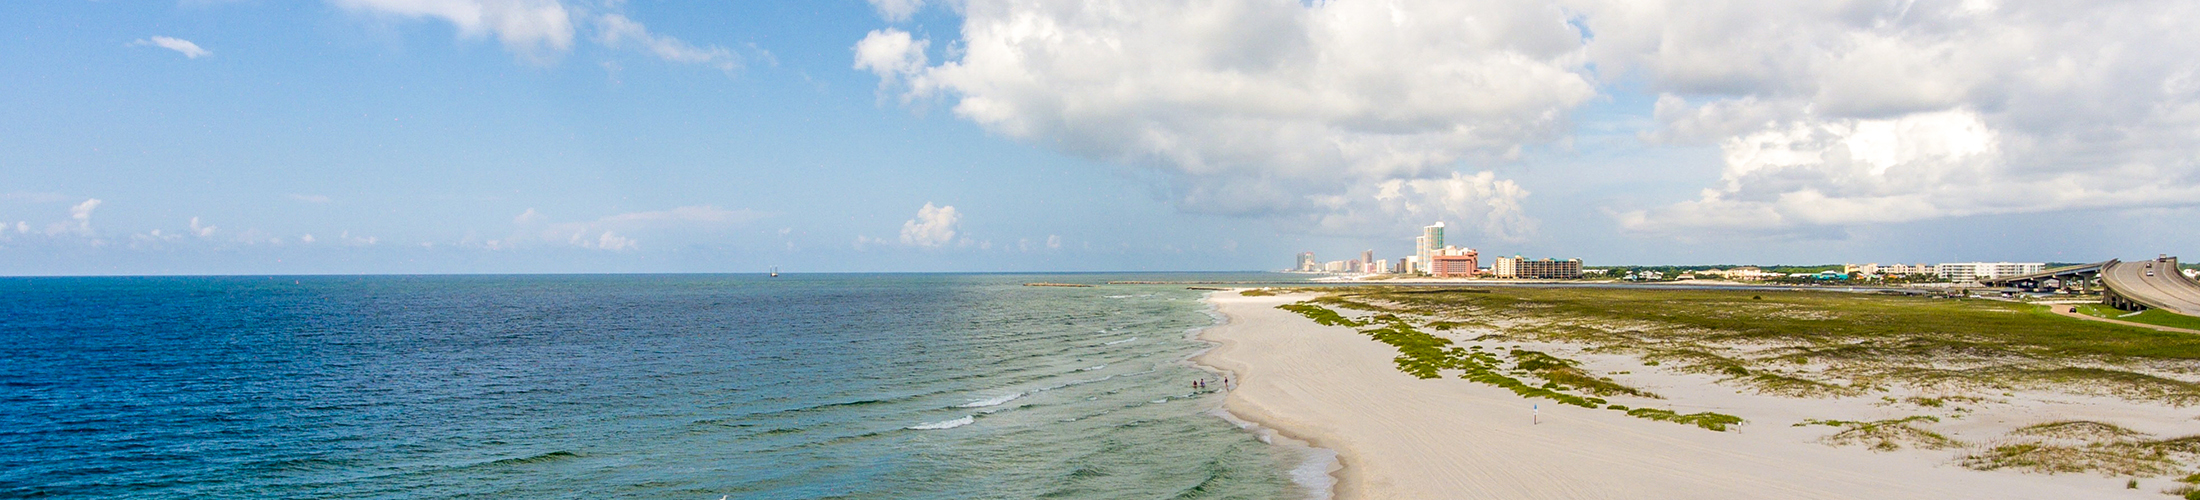 Gulf Coast Image